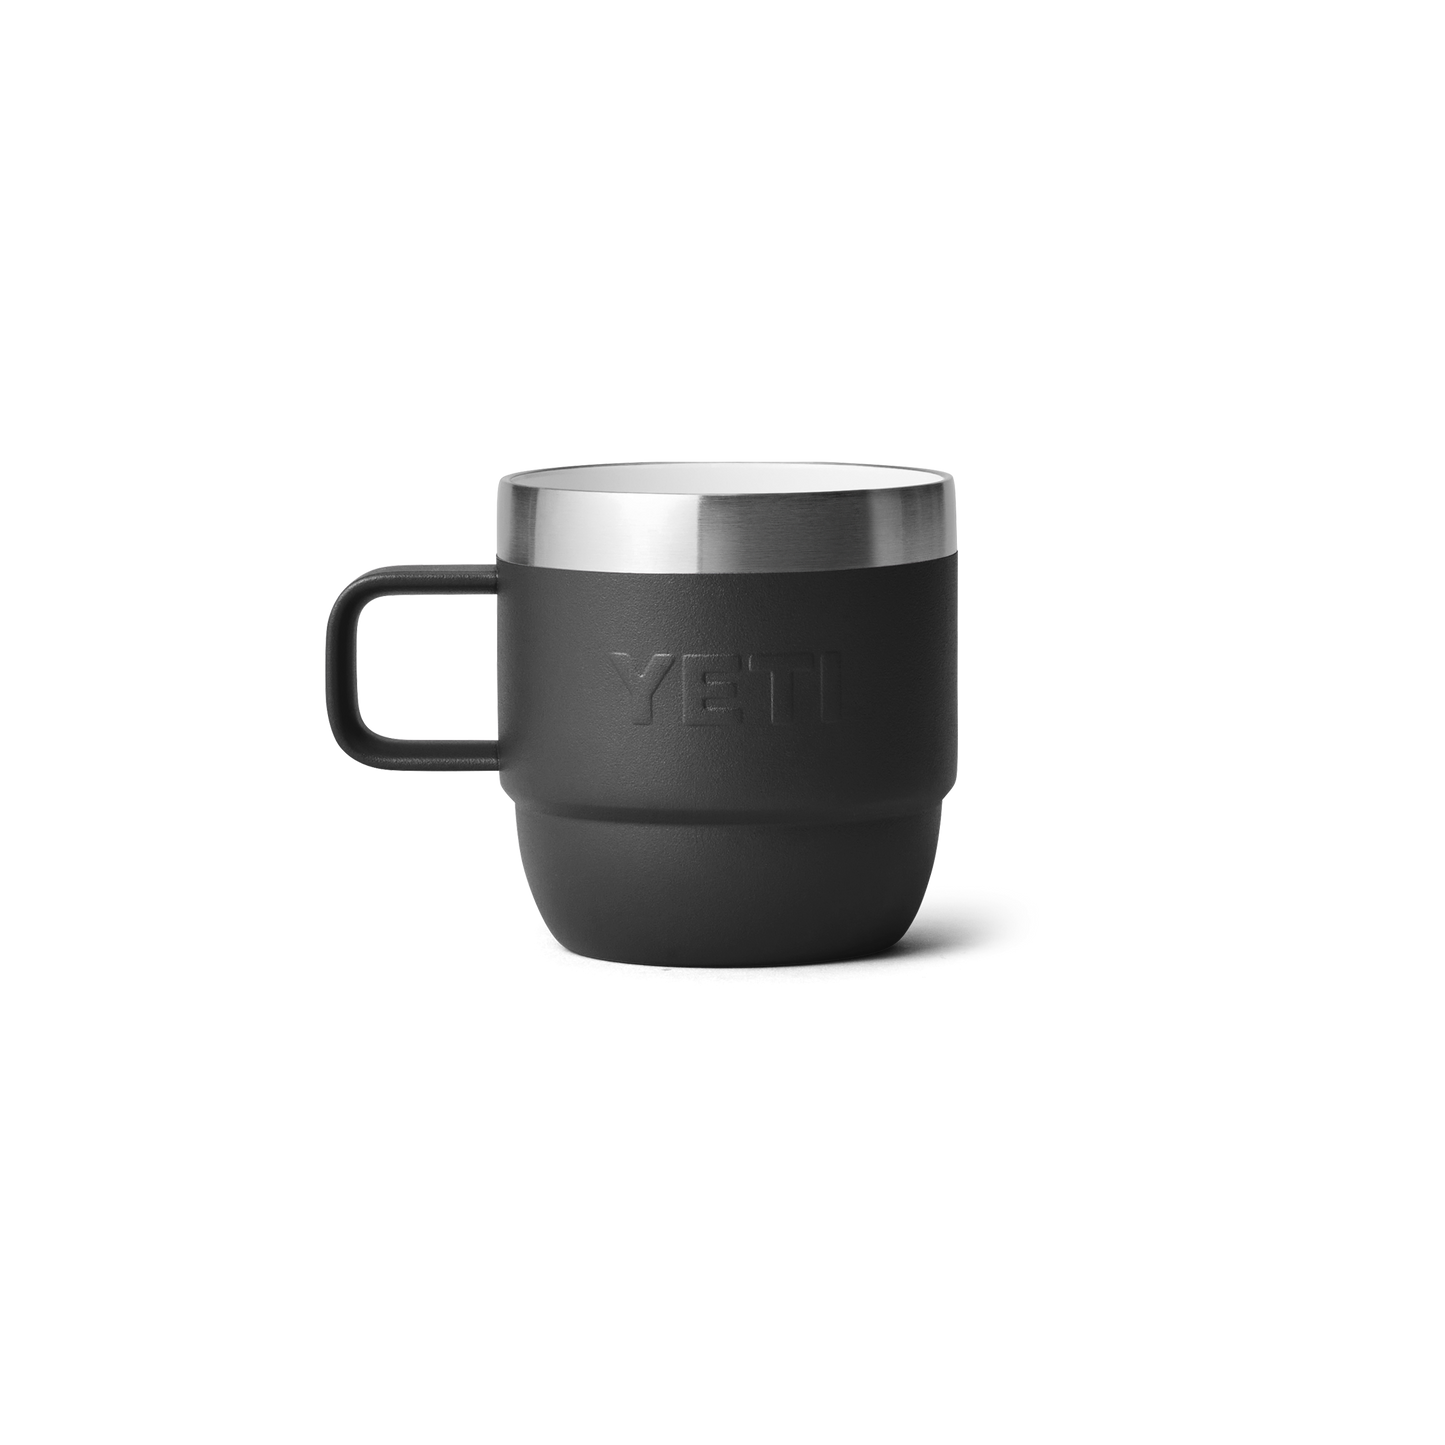 YETI Rambler® 6 oz (177ml) Stackable Mugs Black